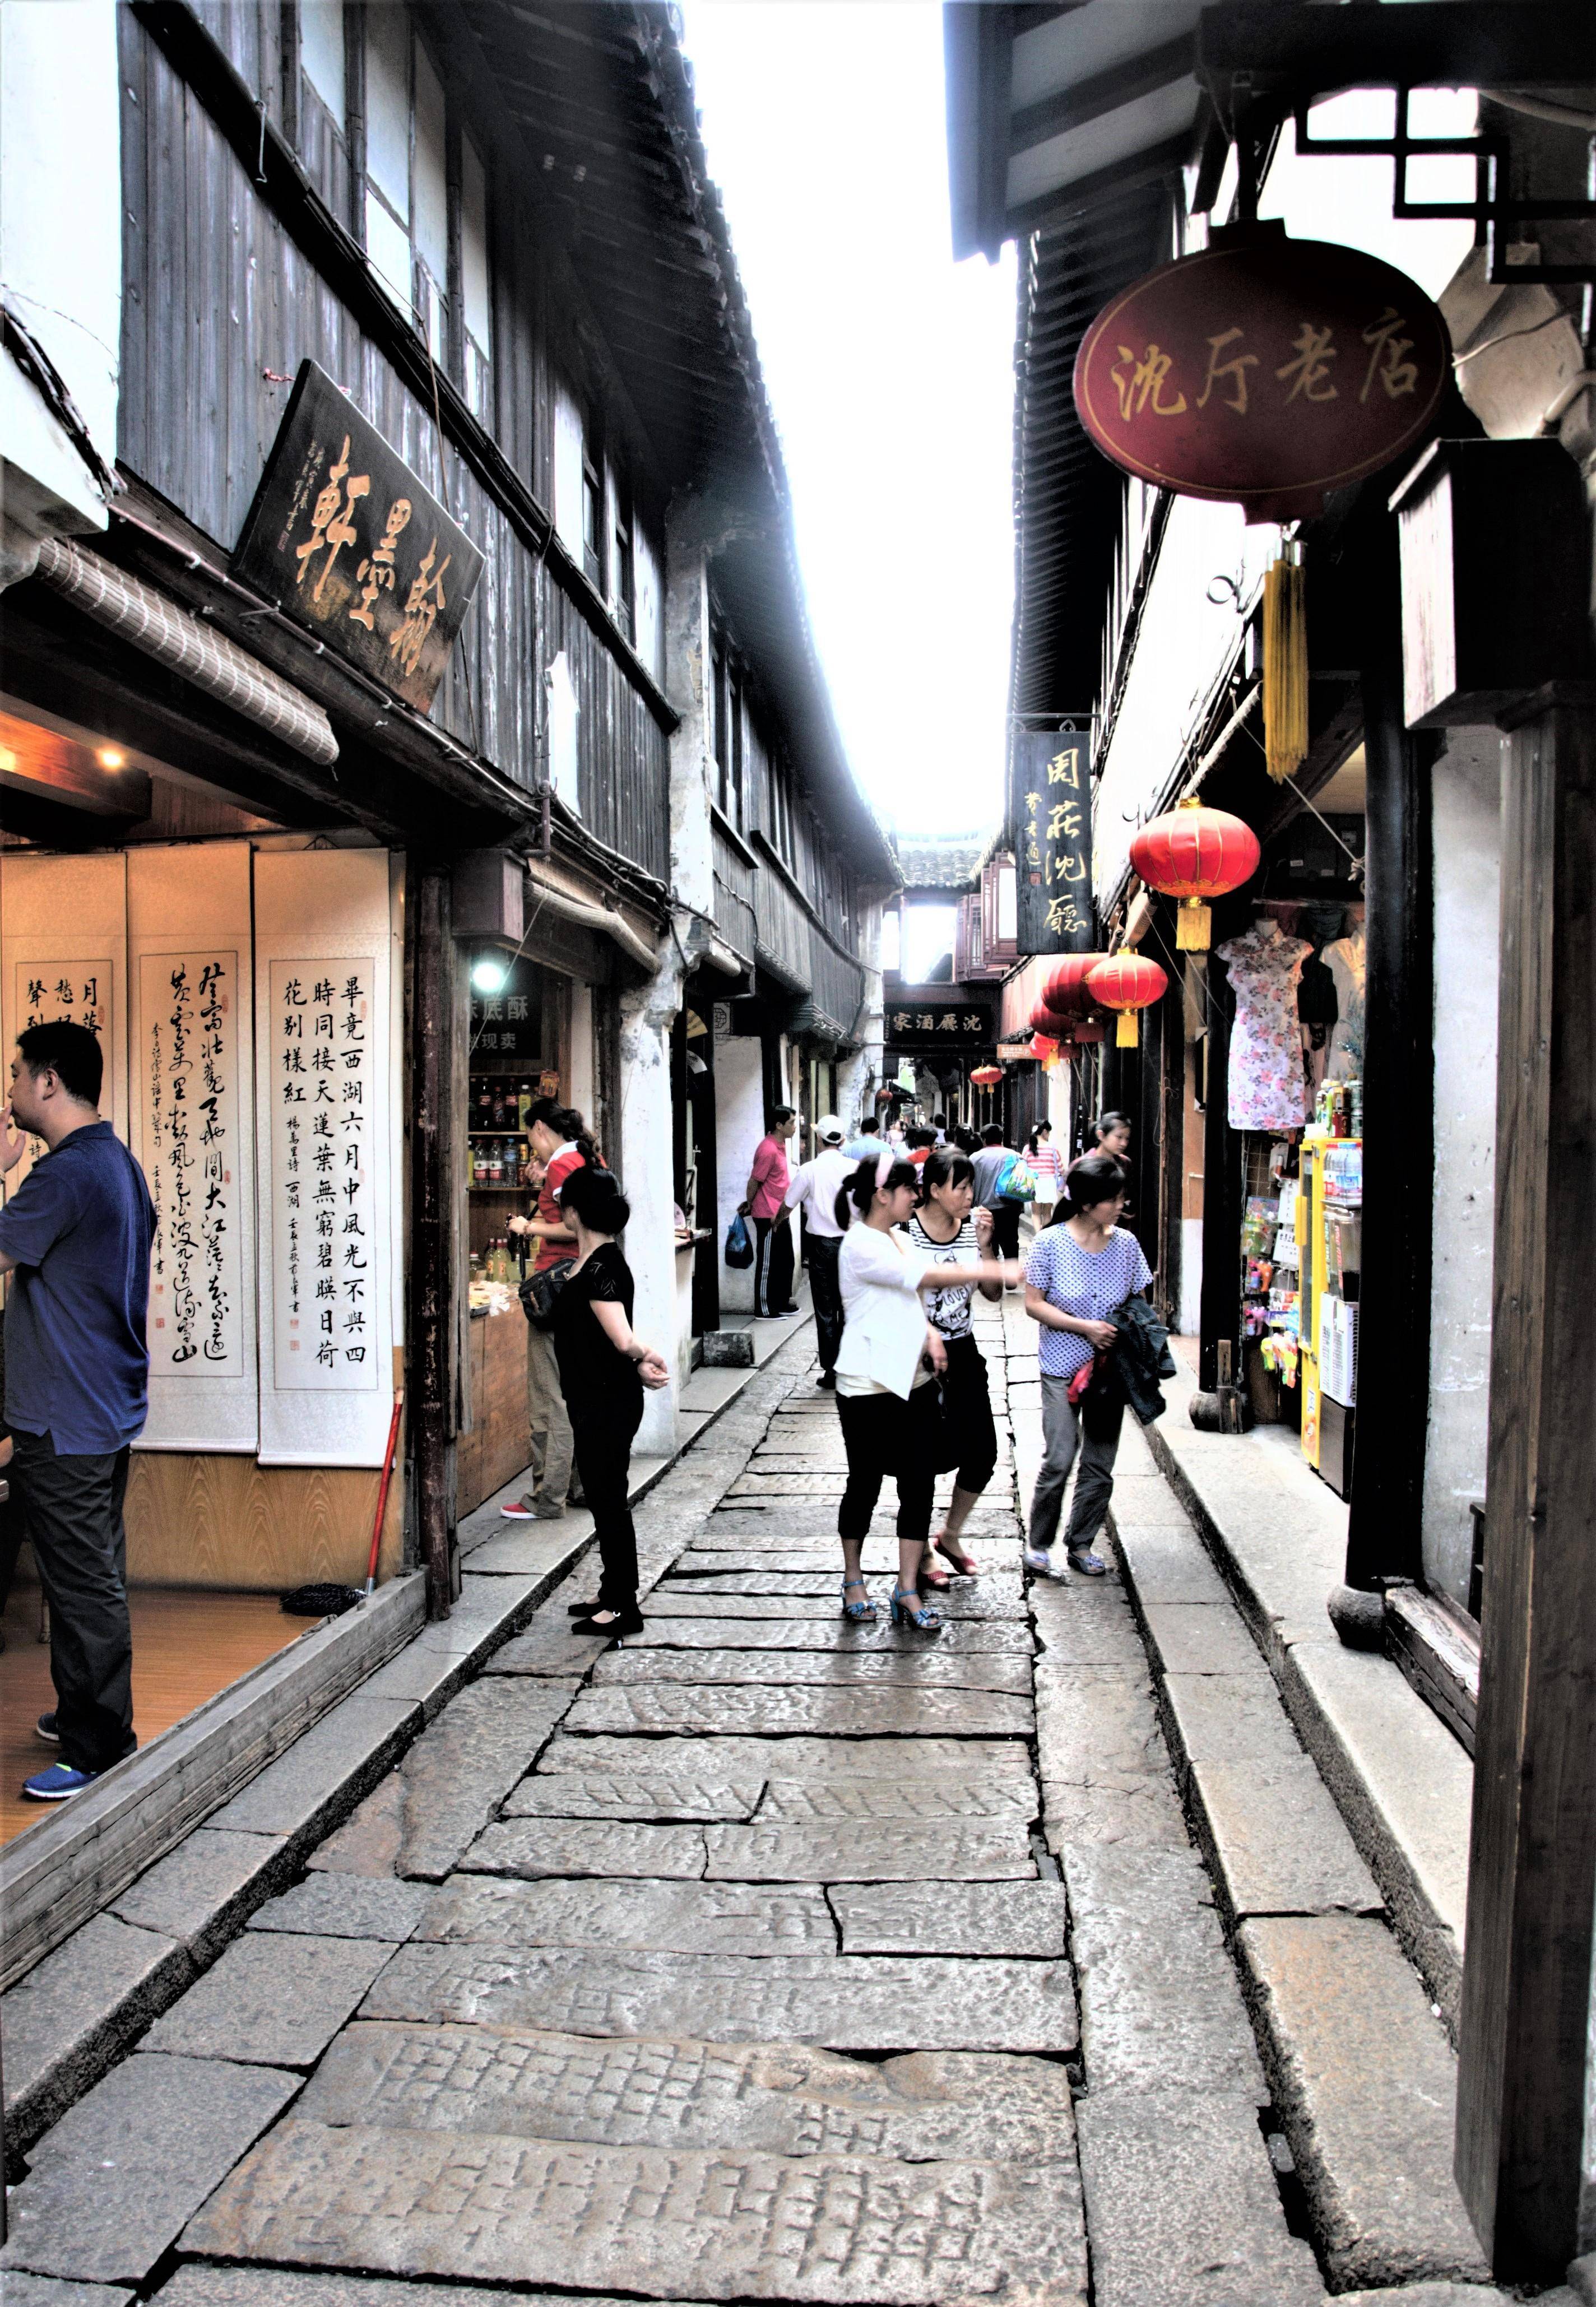 周庄台湾老街图片